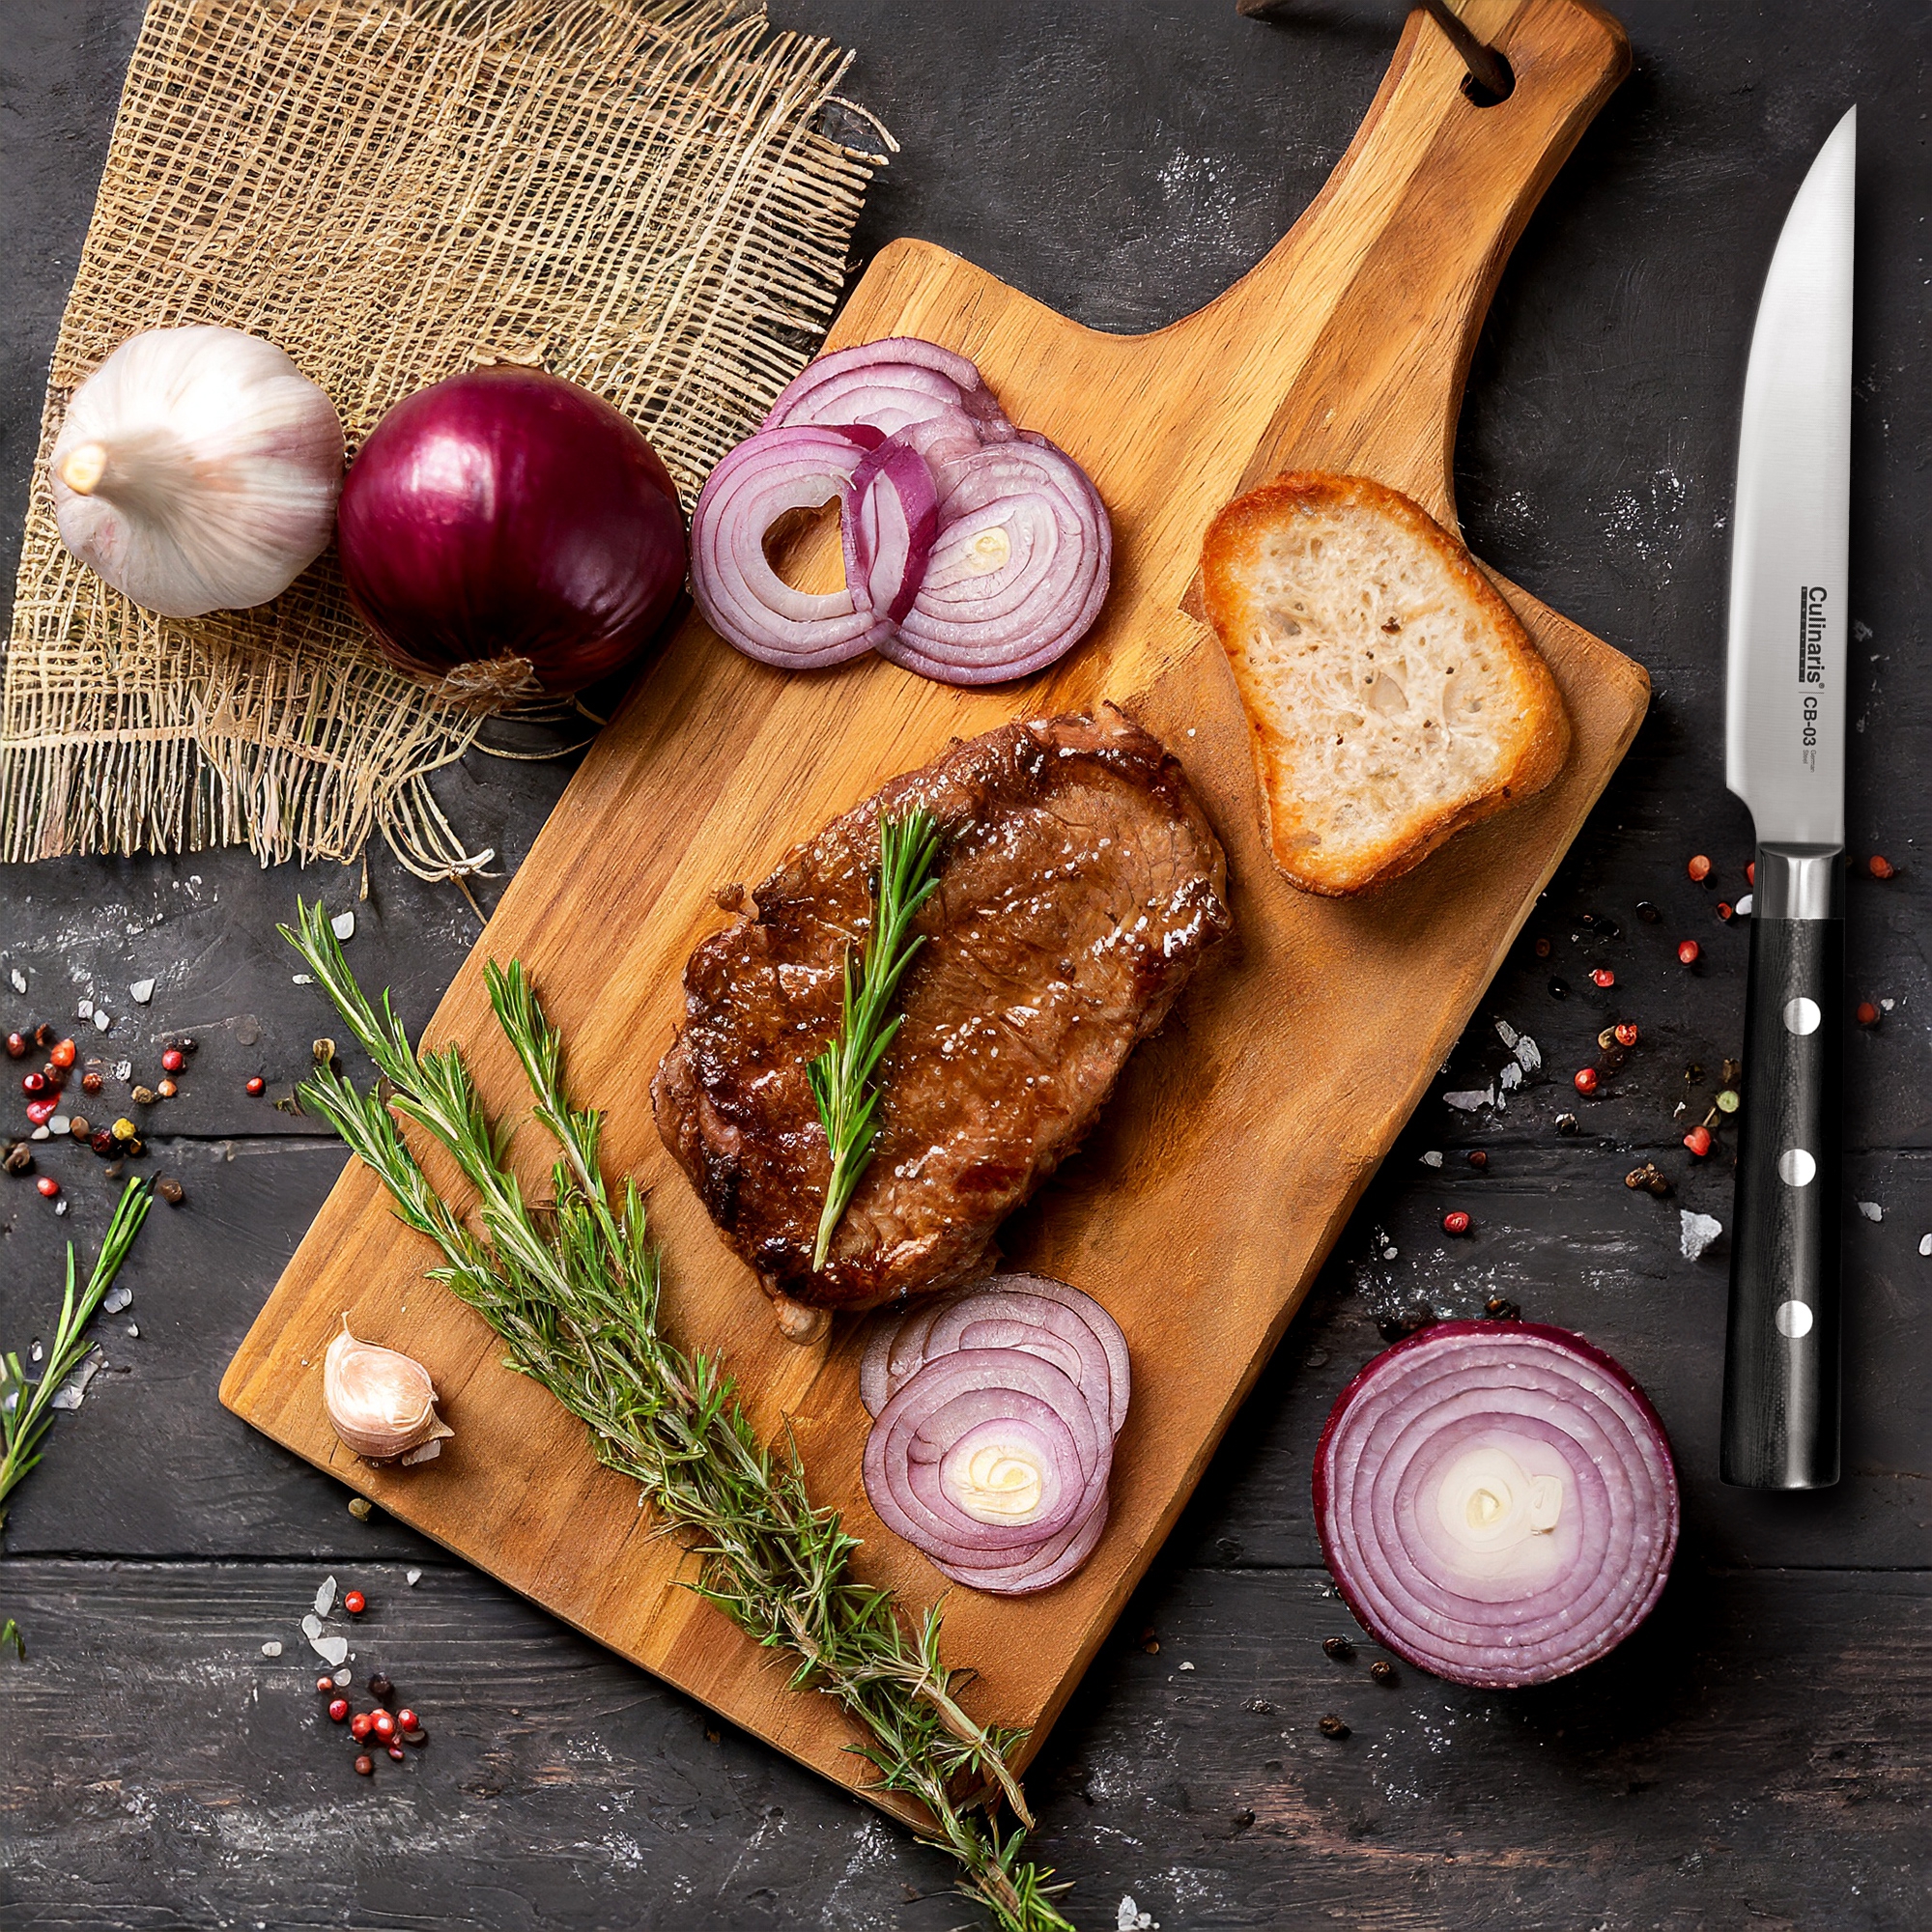 Culinaris - Steak Knife 13,5 cm